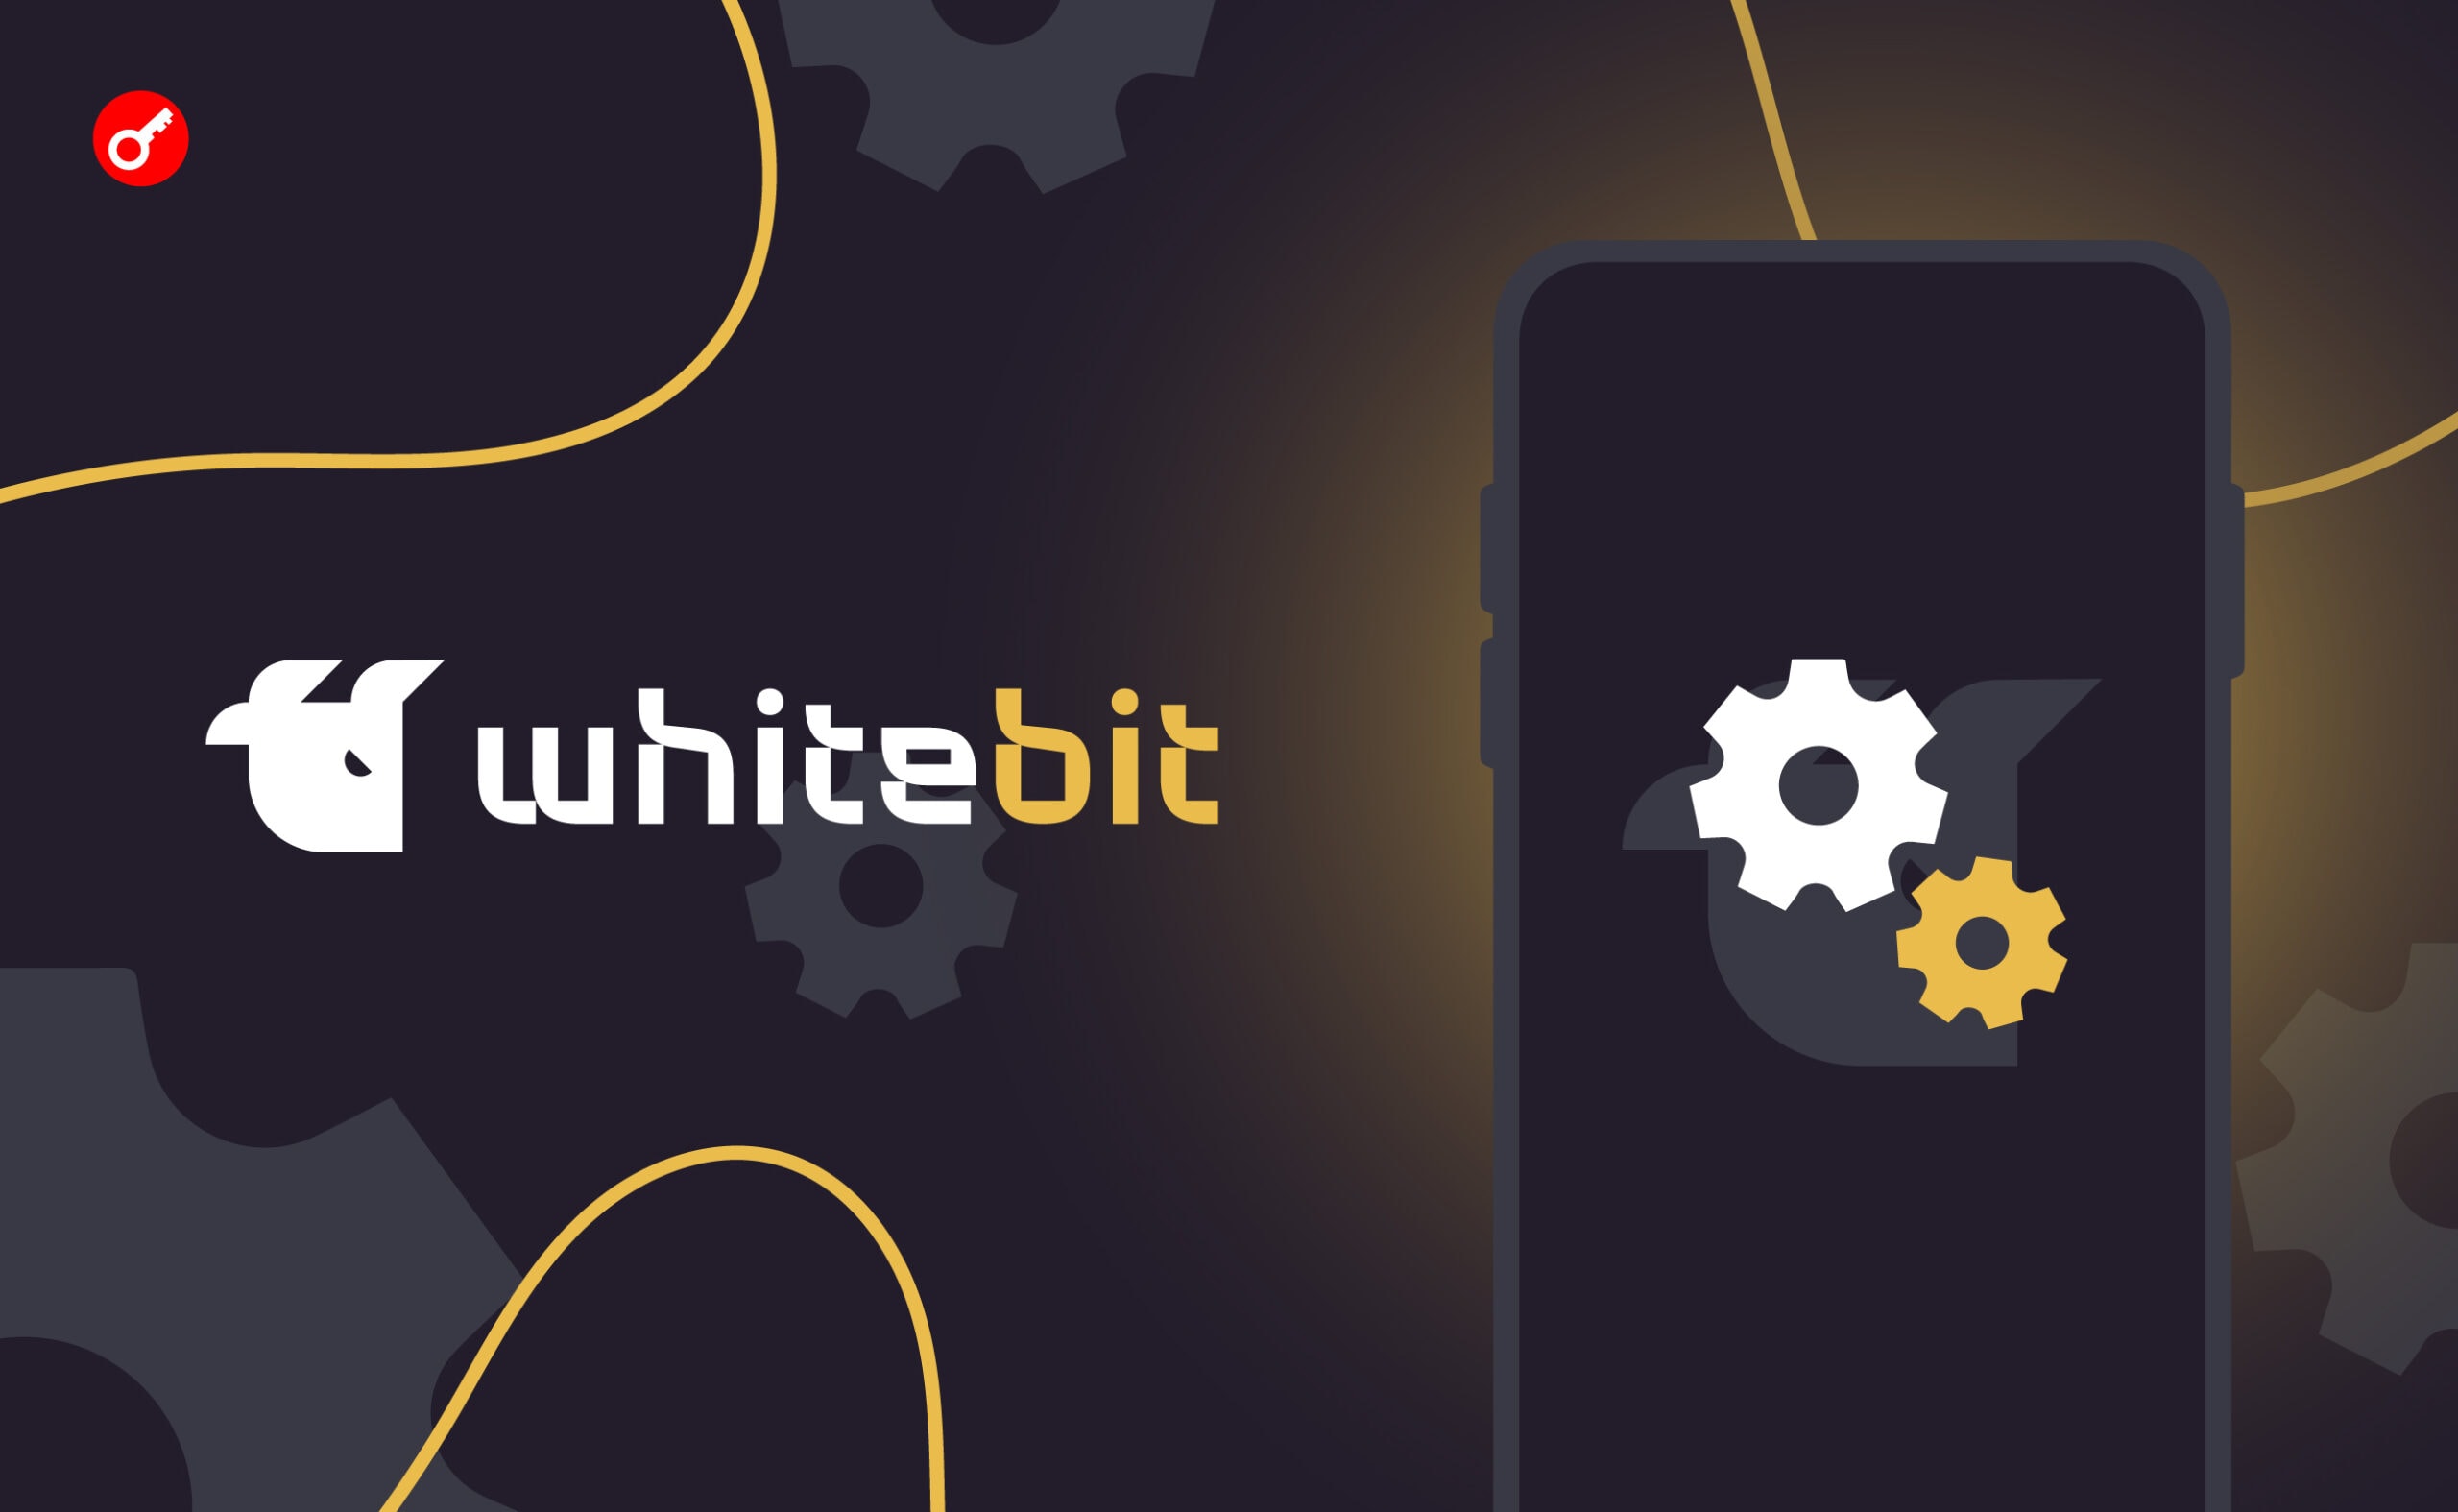 WhiteBIT Launchpad оголосила про початок голосування за новий проєкт. Головний колаж новини.